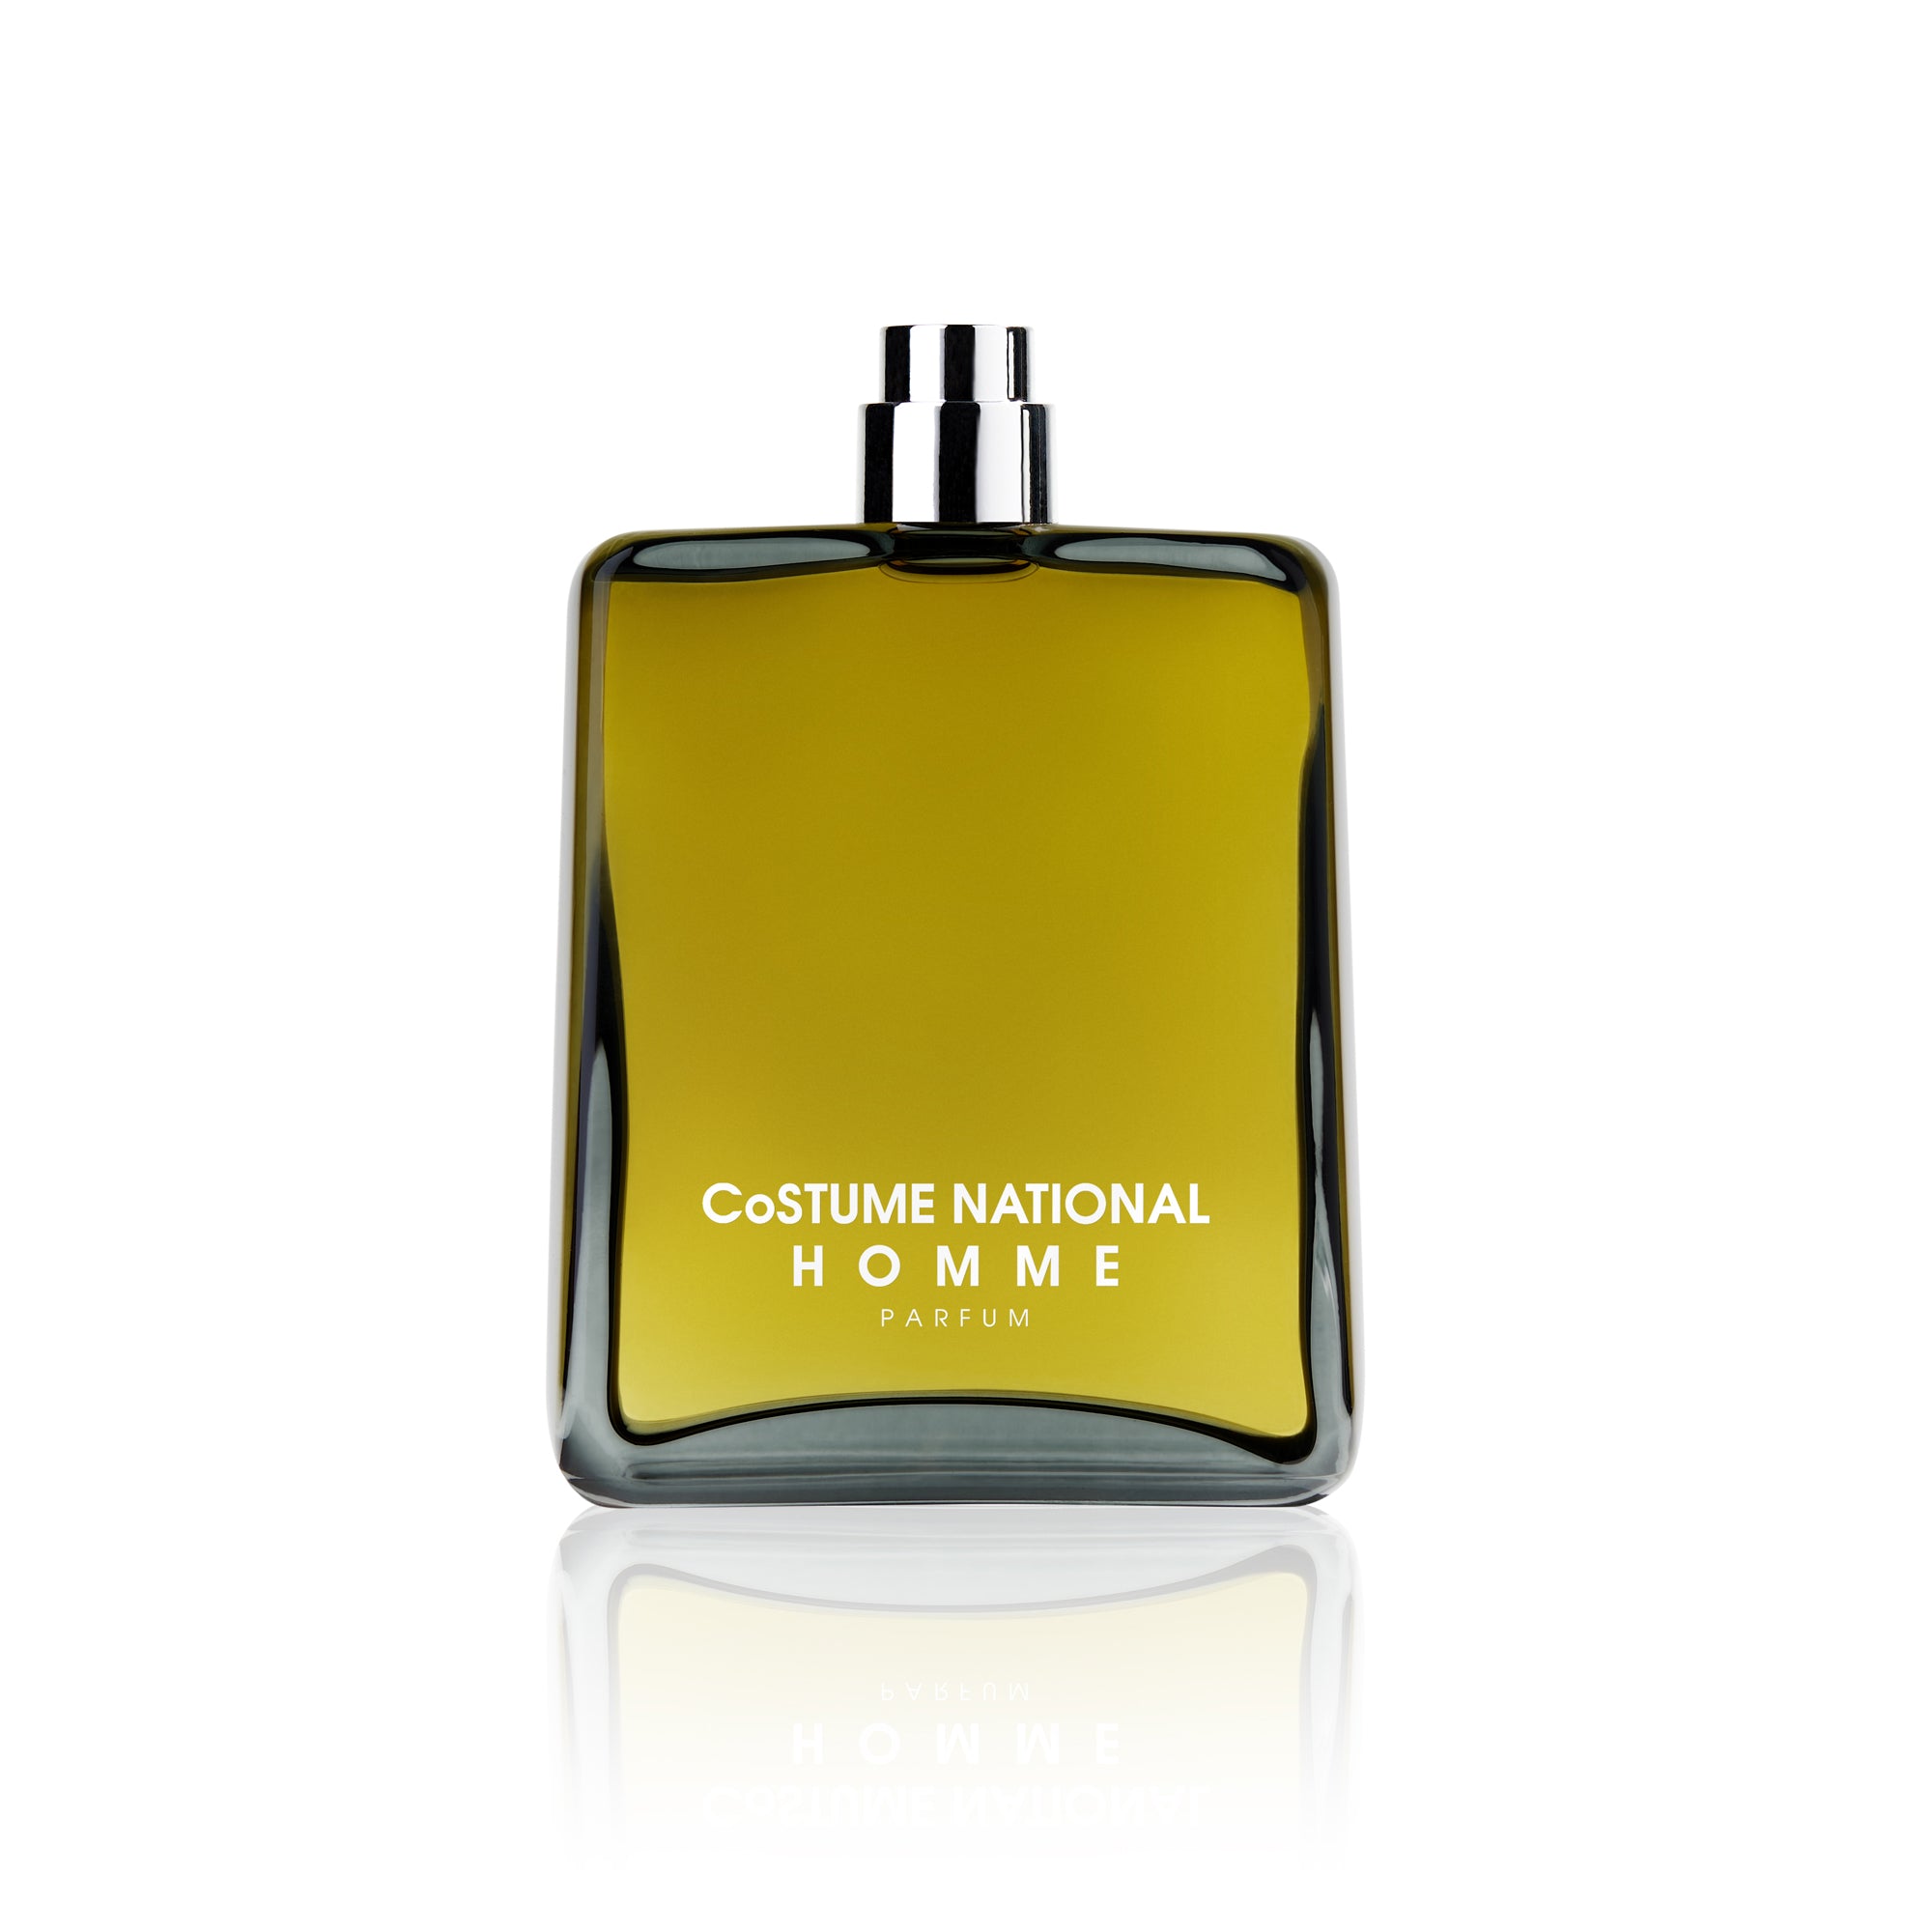 Costume National – Homme Parfum - Danae Profumeria